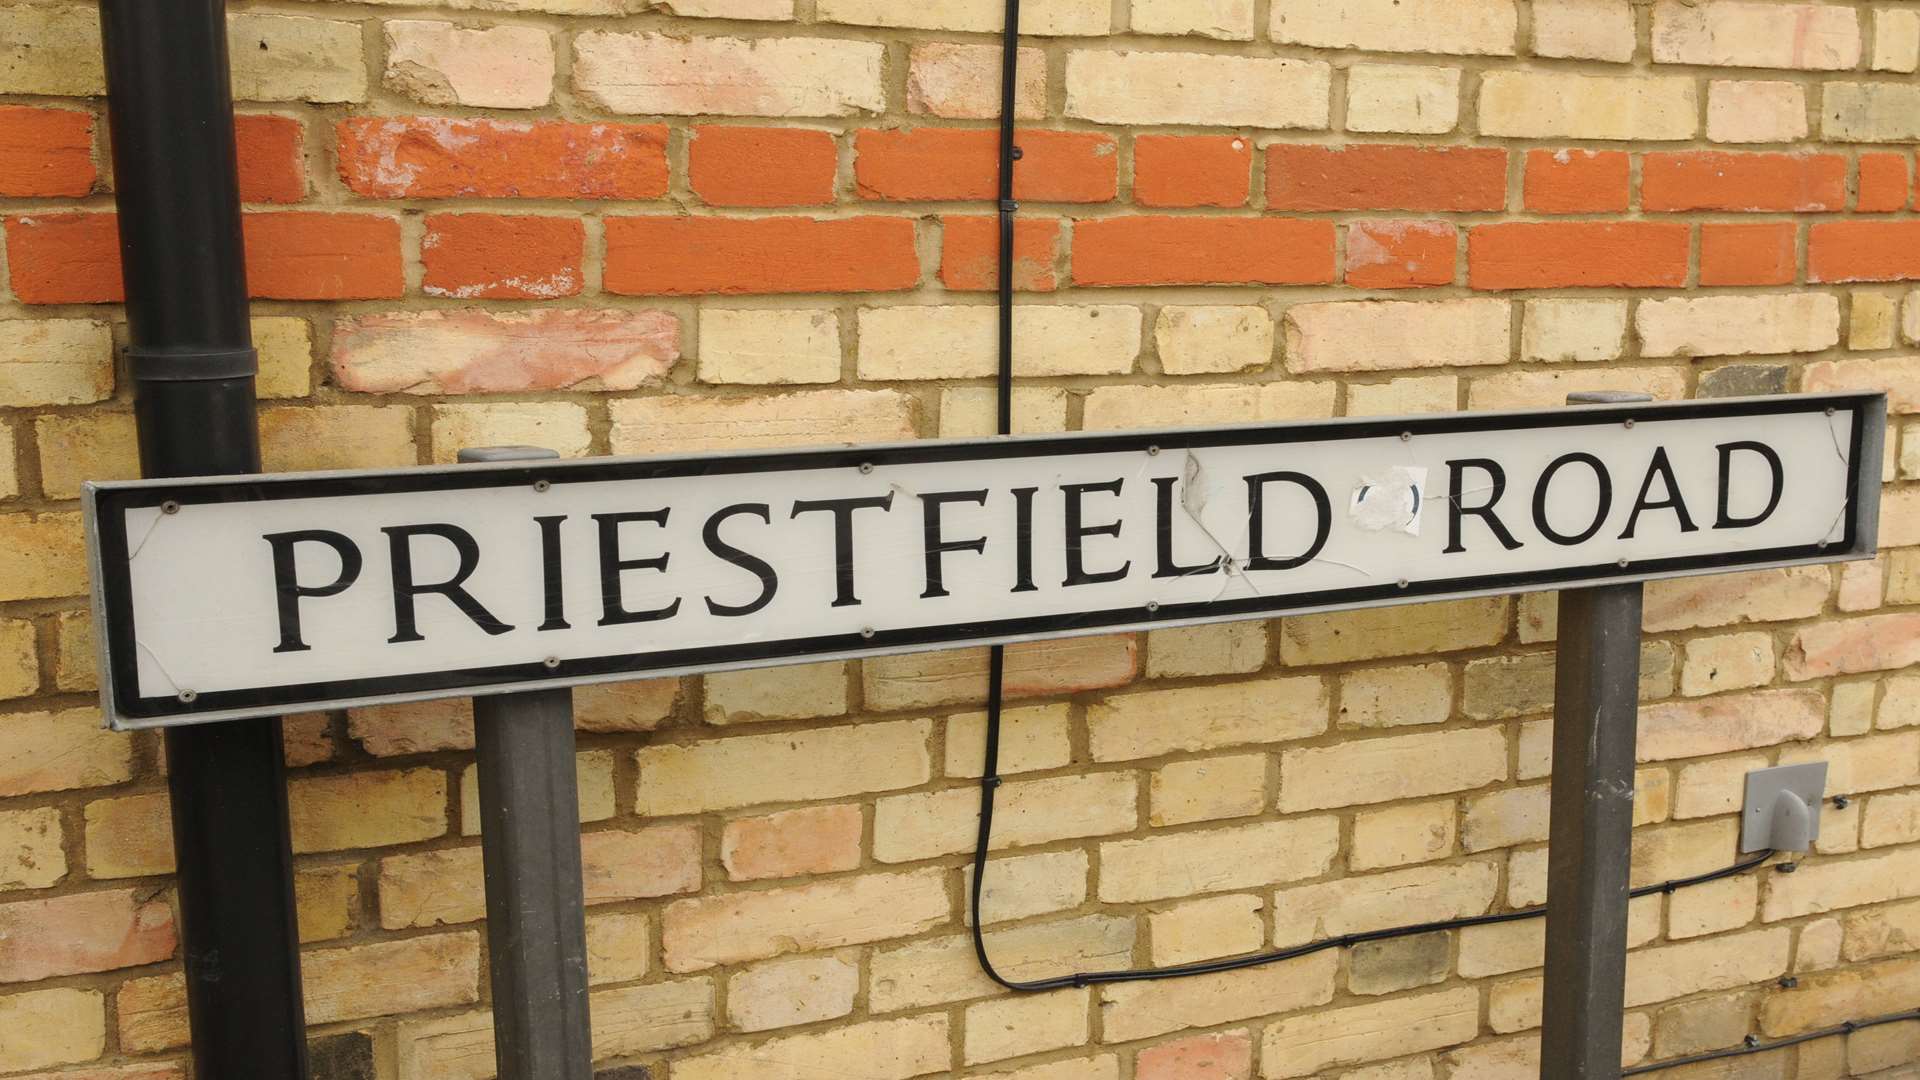 Priestfield Road, Gillingham